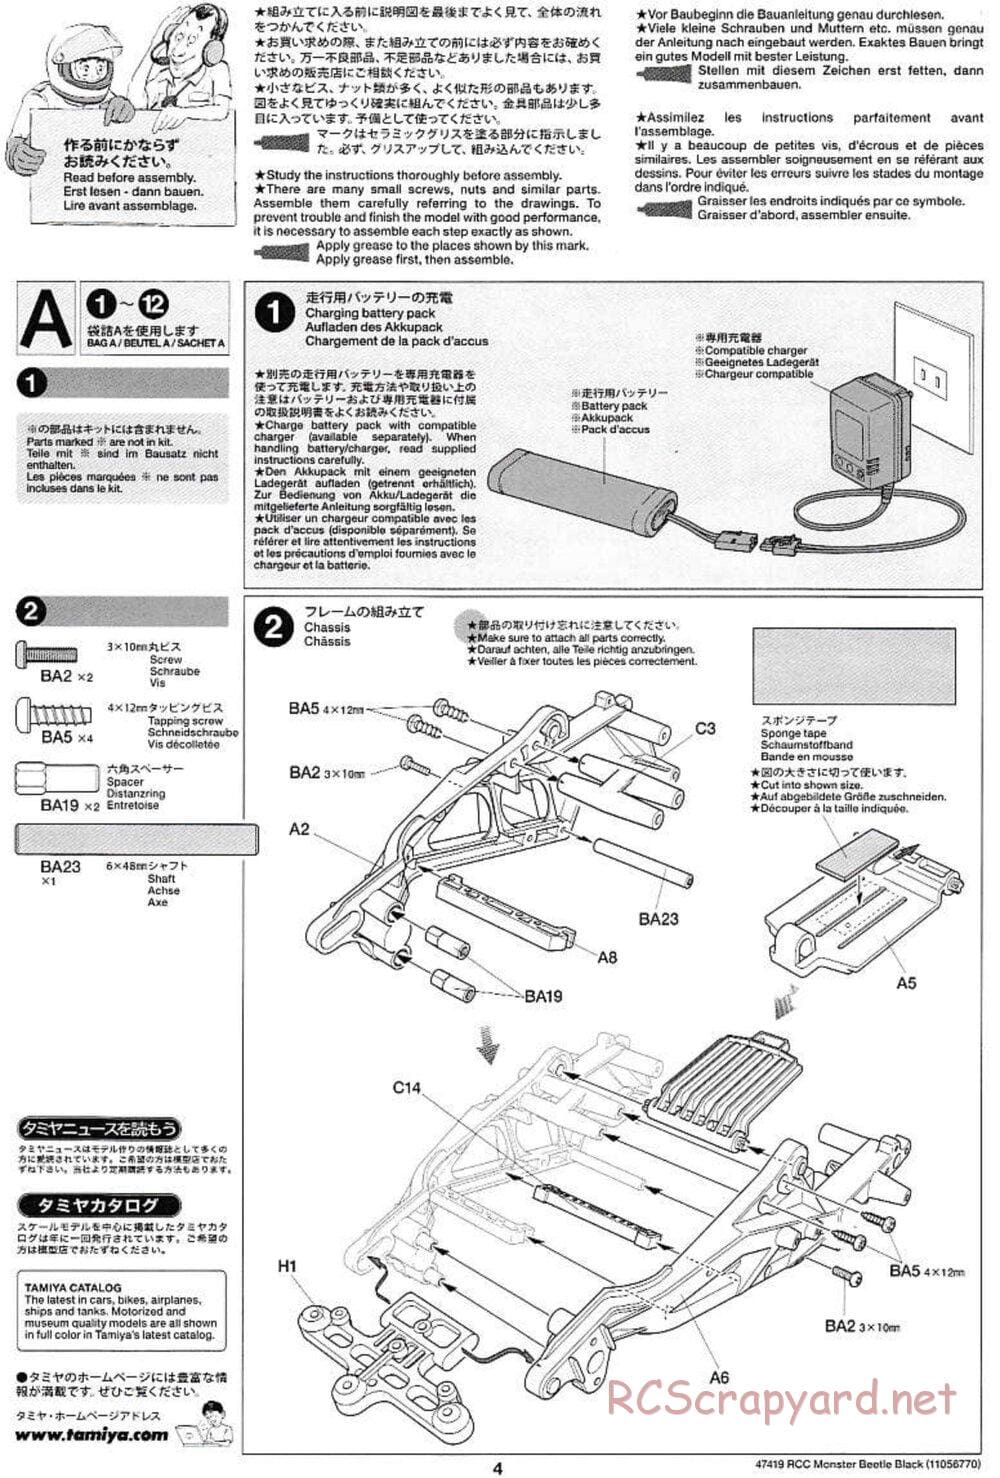 Tamiya - Monster Beetle Black Edition - ORV Chassis - Manual - Page 4